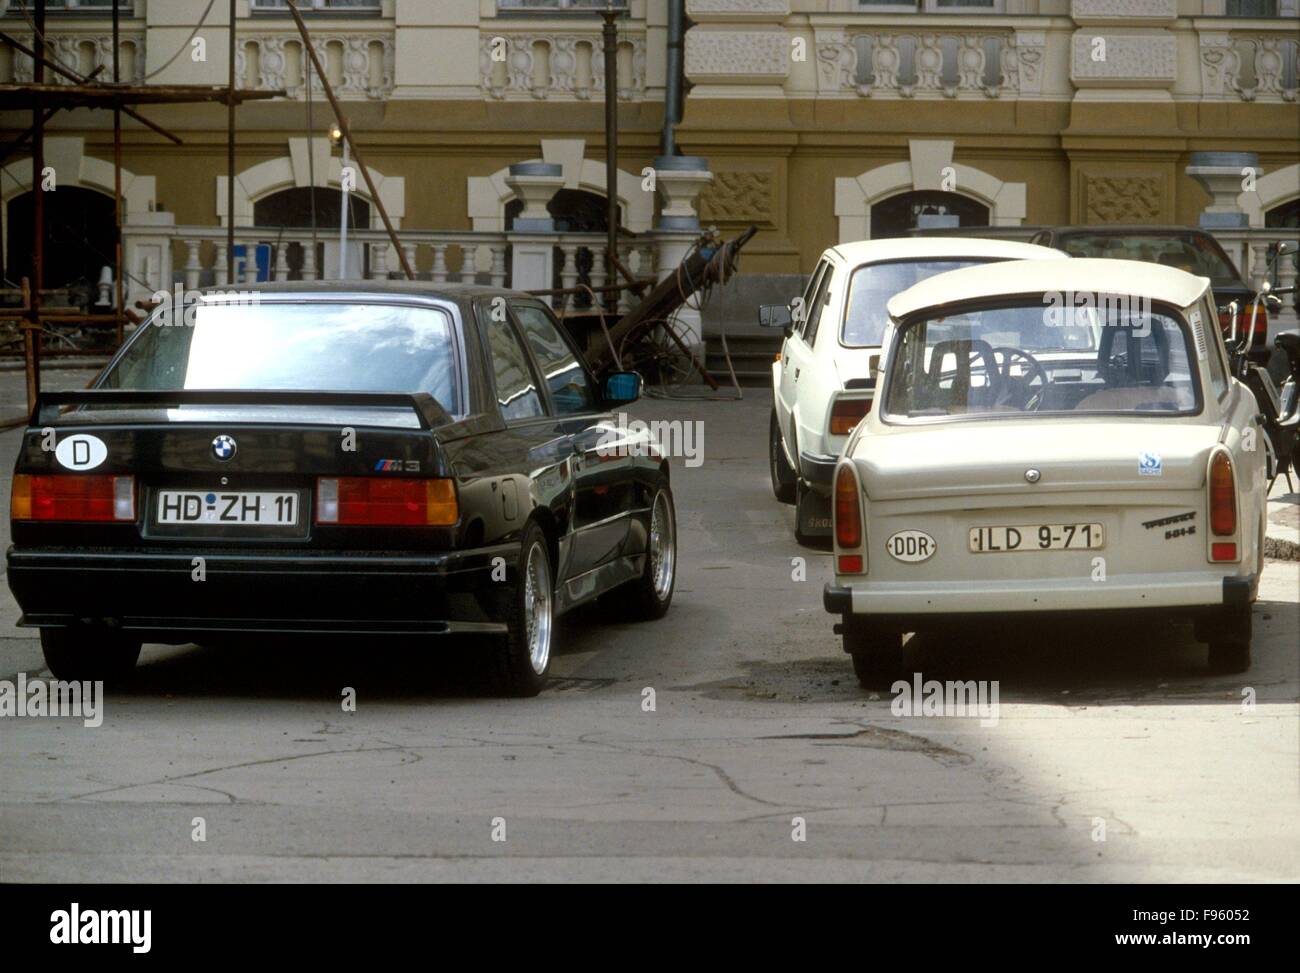 Karlovy Vary (République tchèque, 1988) - une voiture de BMW de la République fédérale d'Allemagne (BRD) stationné près d'une Trabant de République démocratique allemande (DDR) - BMW automobile della Repubblica Federale Tedesca (RFT) un parcheggiata di fianco Trabant una della Repubblica Democratica Tedesca (DDR) Banque D'Images